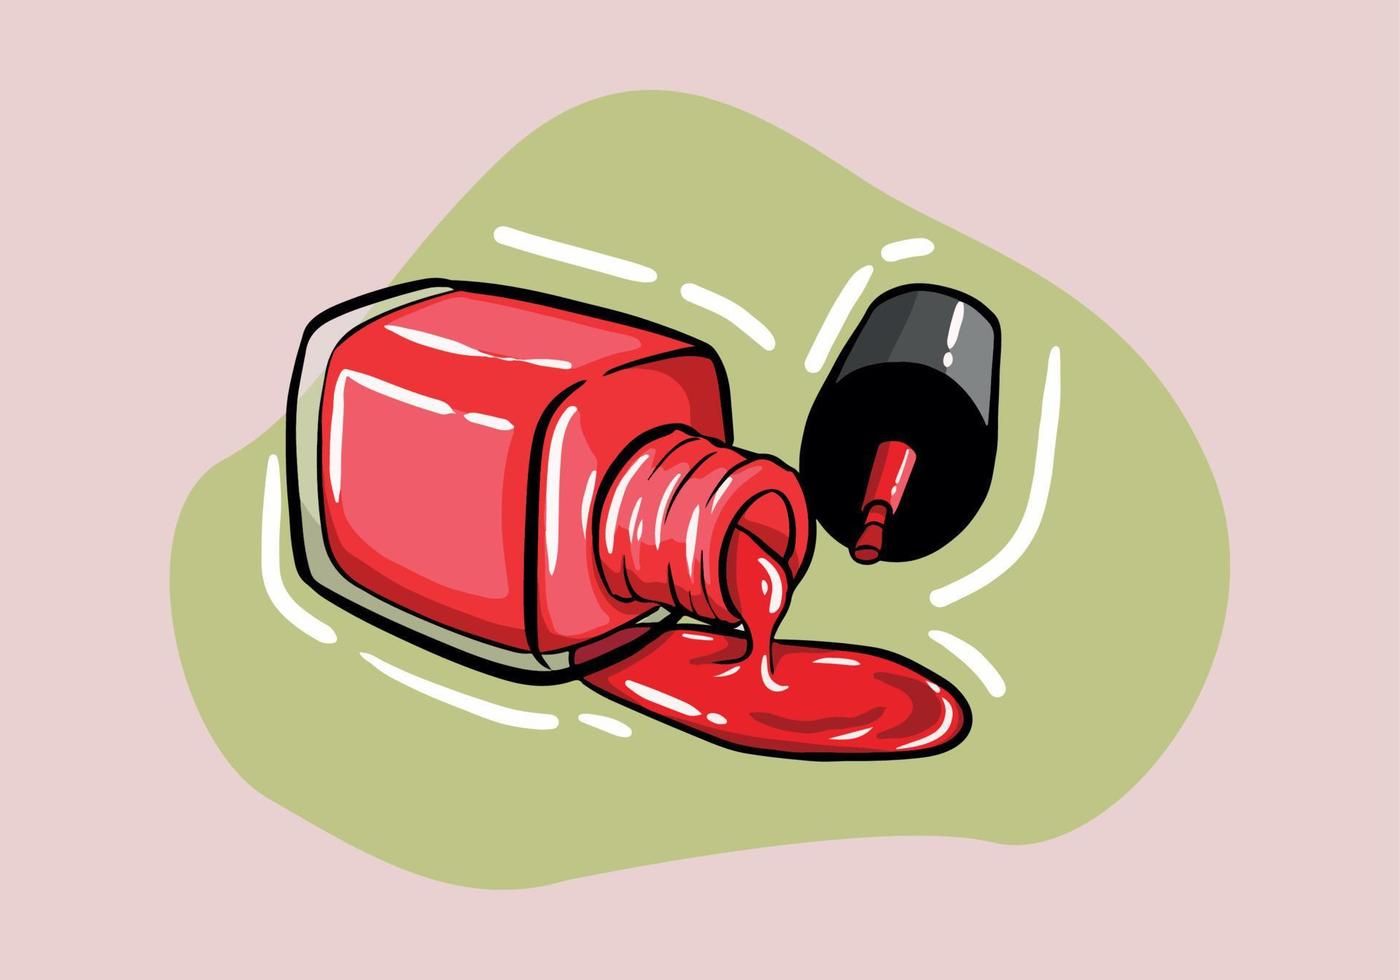 röd nagel putsa flaska baner design. stock vektor illustration. för nagel bar, skönhet salong, manikyrist, klistermärken och social media